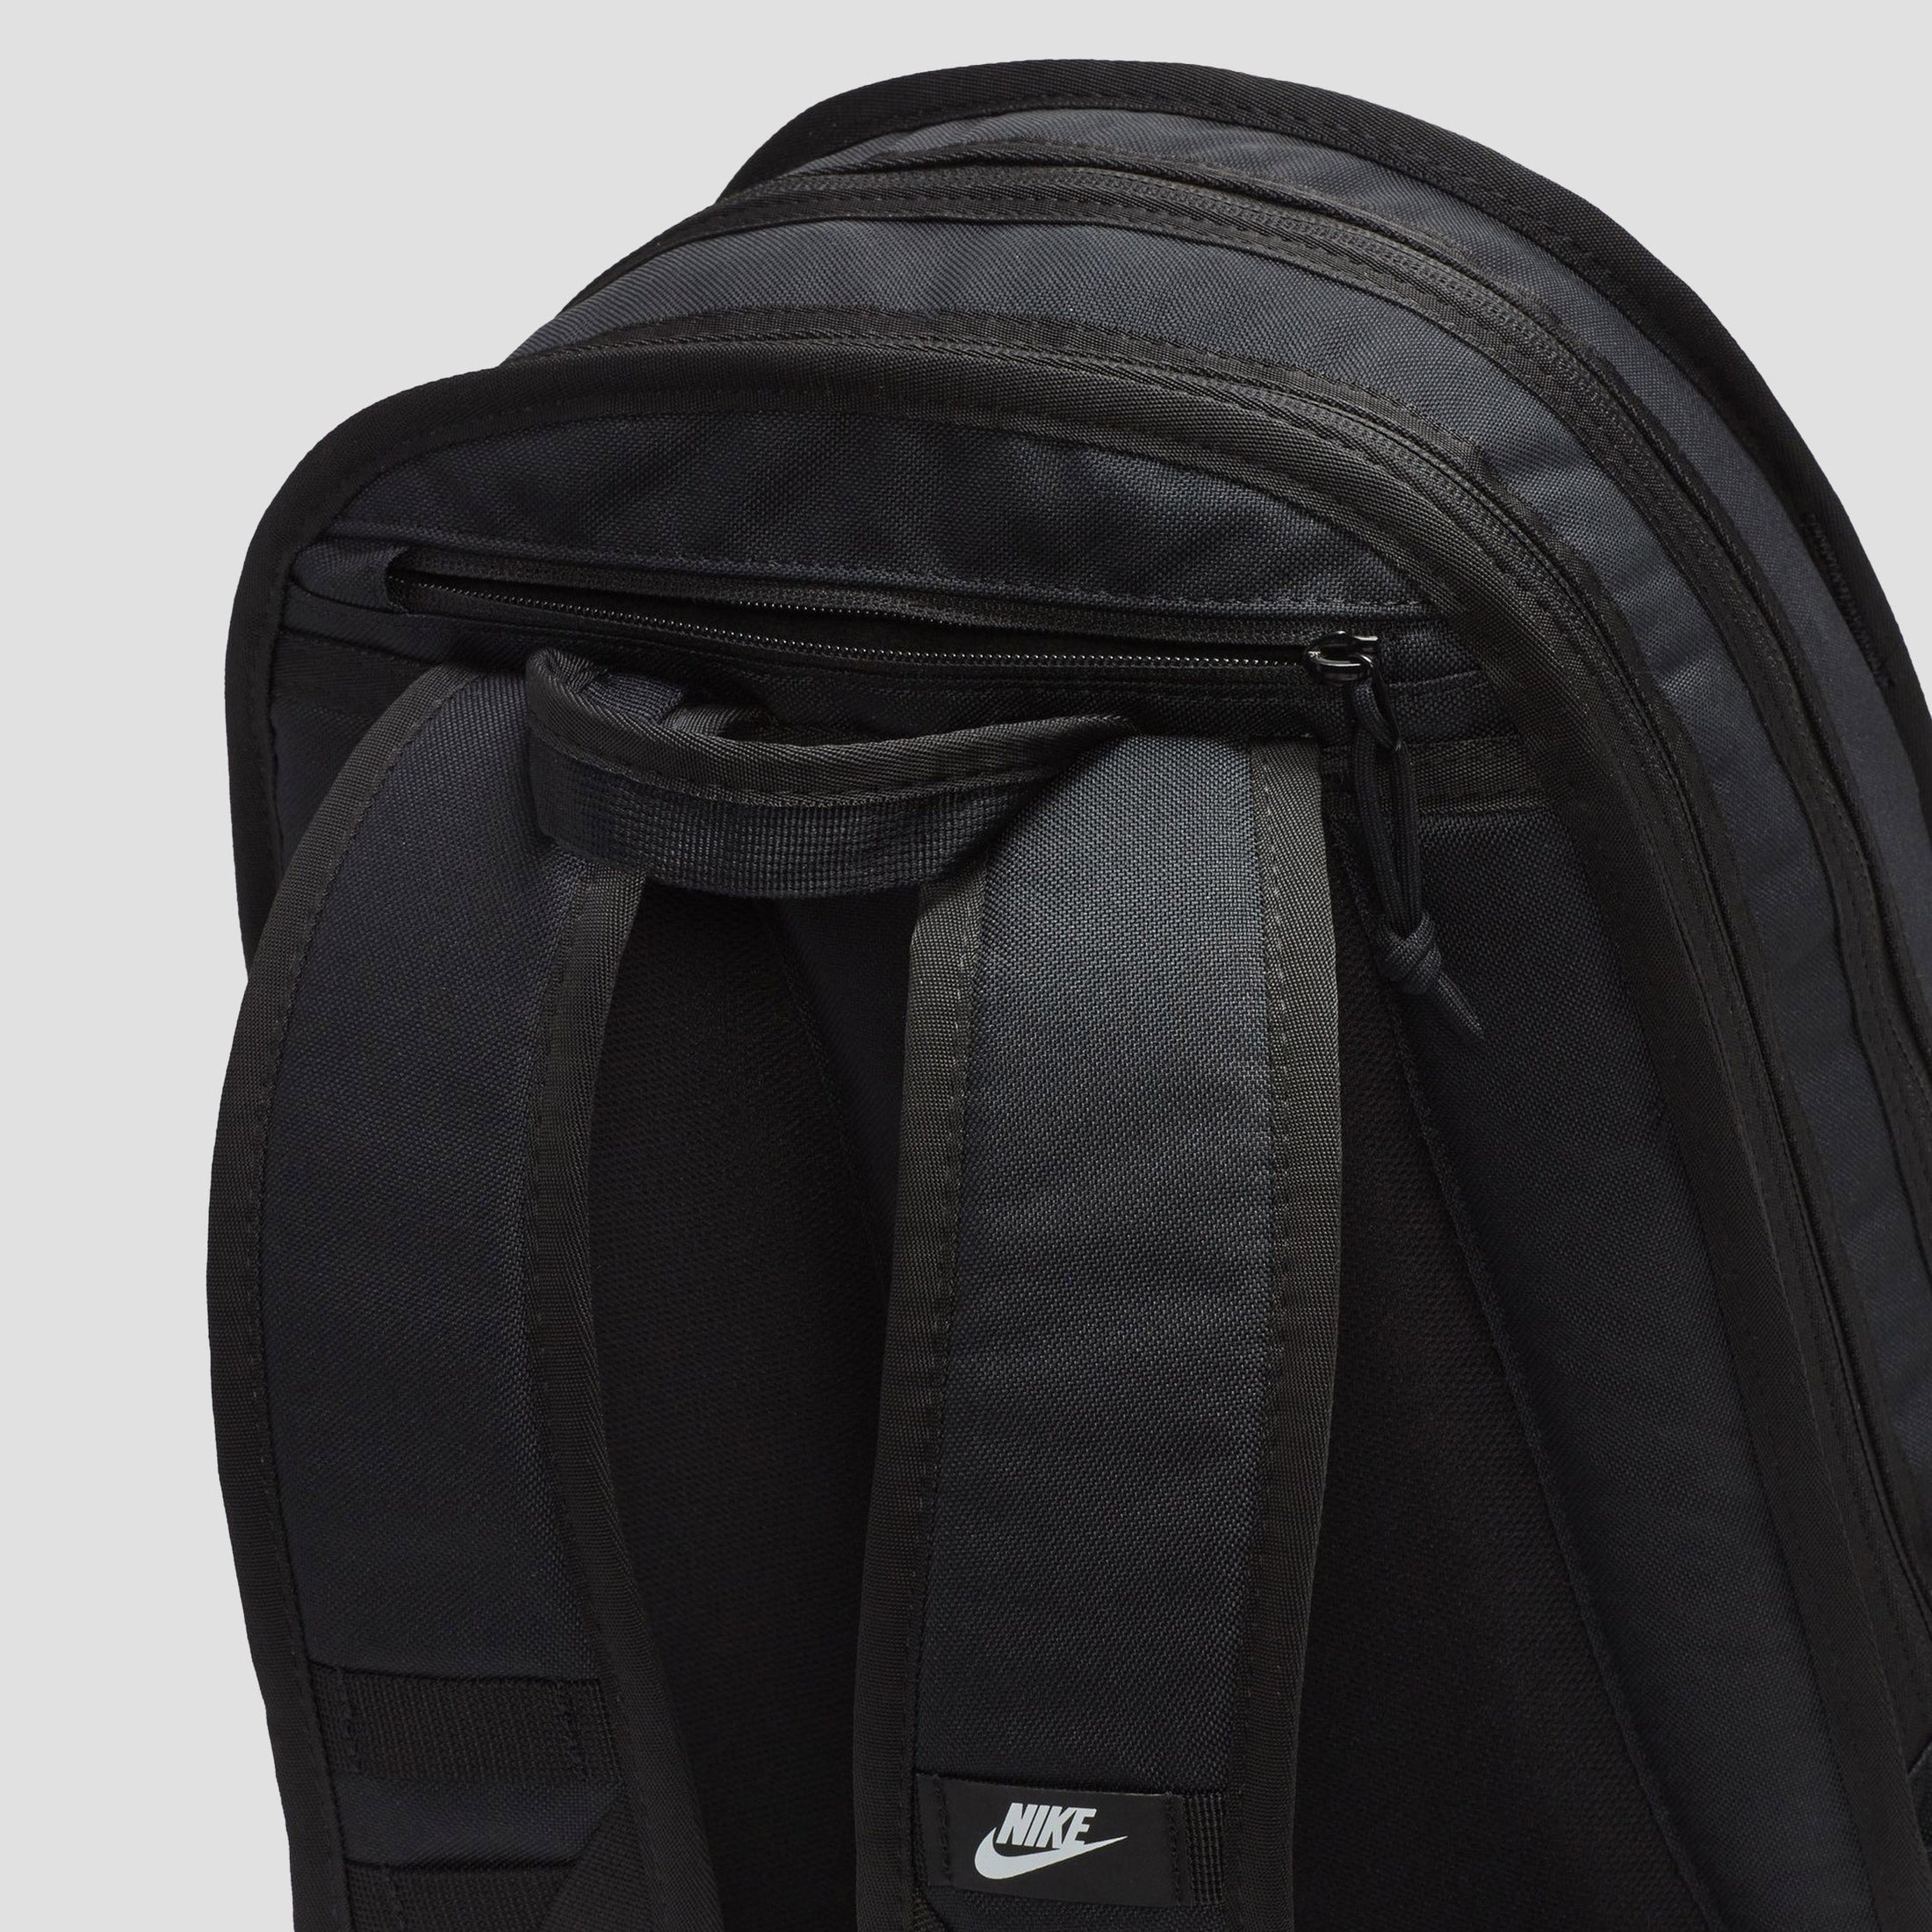 Nike RPM Backpack Black / Black / White